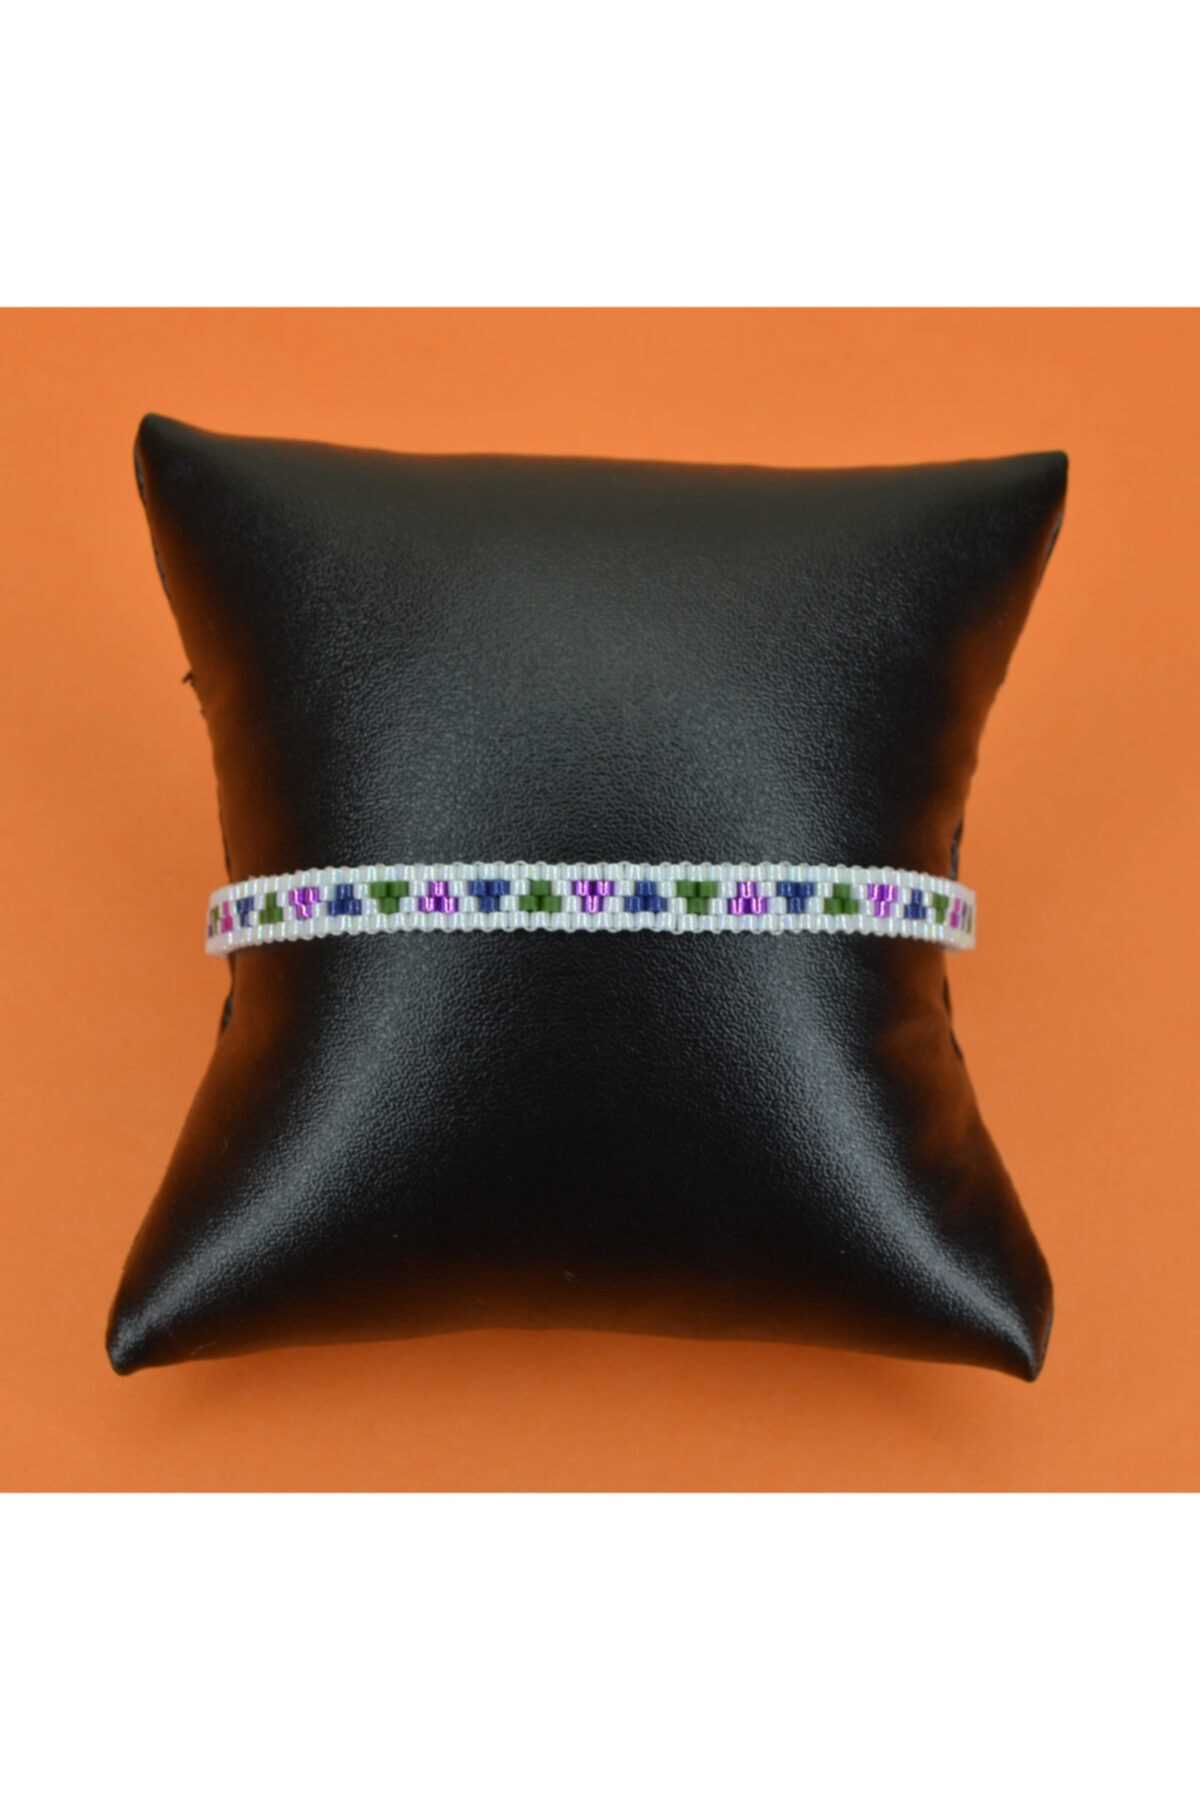 دستبند زنانه ارزان قیمت برند GD JEWELRY کد ty86220345